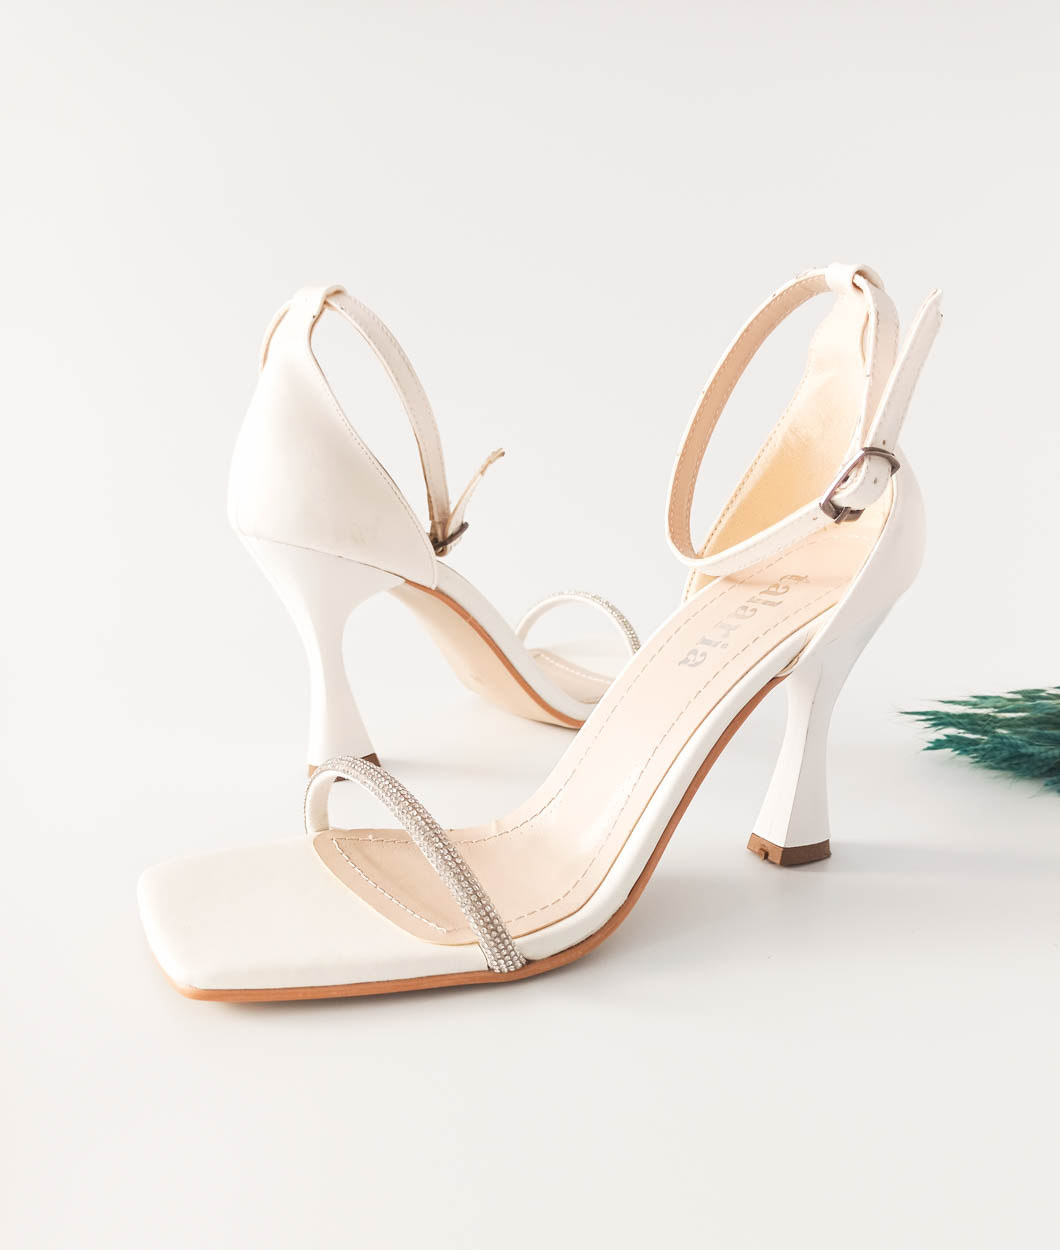 GDT Ayakkabı Cilt Beyaz Tek Bantlı Taşlı Kadın Abiye Ayakkabı